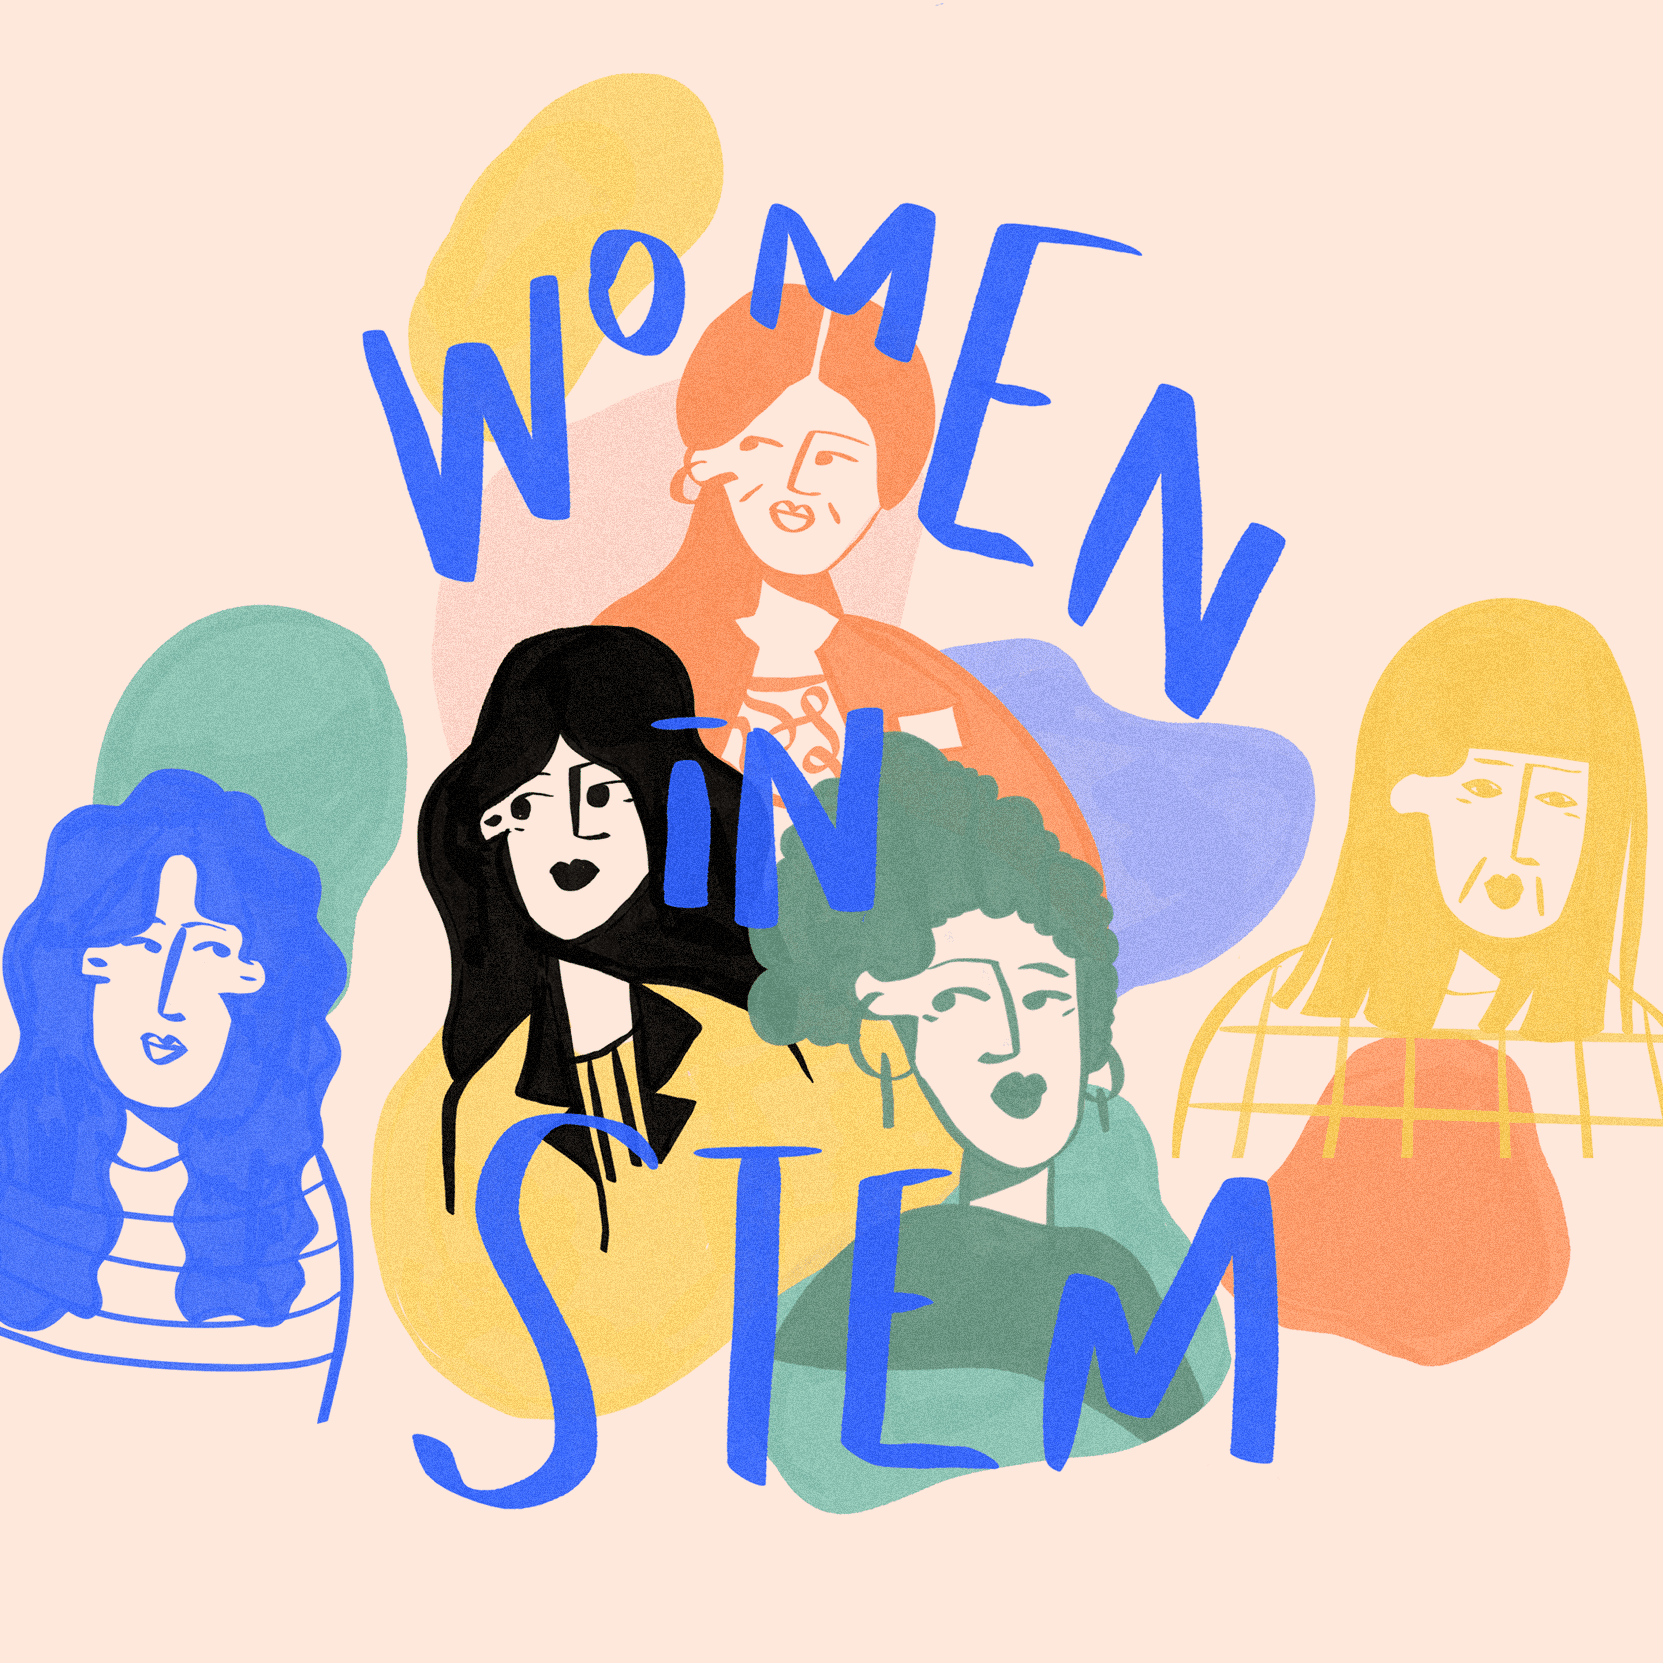 Read more about the article Tháo gỡ lầm tưởng “Phụ nữ chiếm thiểu số trong ngành STEM vì về mặt sinh học họ yếu kém hơn nam giới”